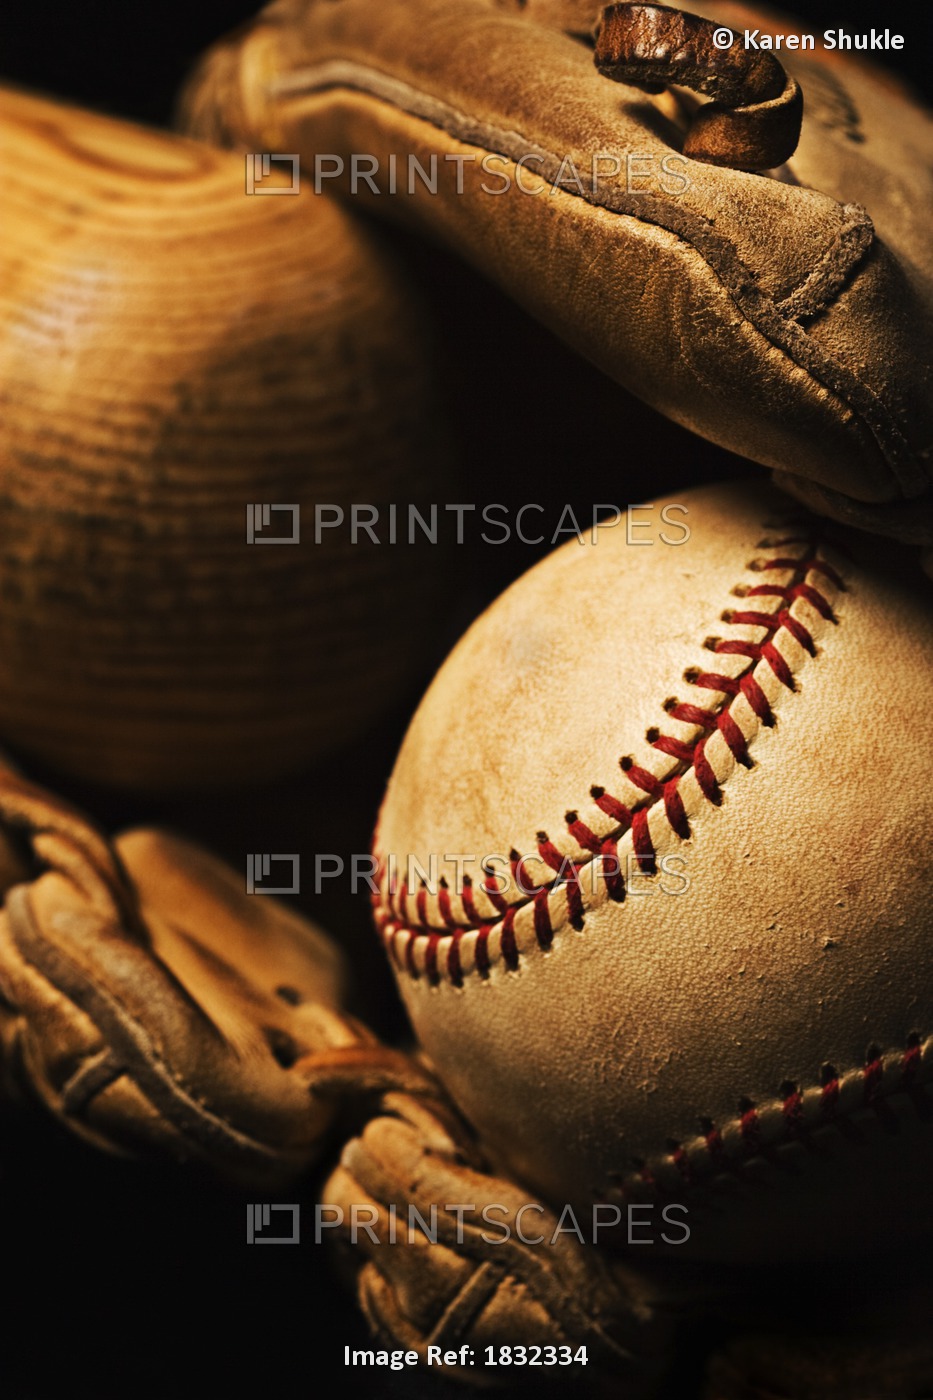 Baseball Bat, Ball, Glove